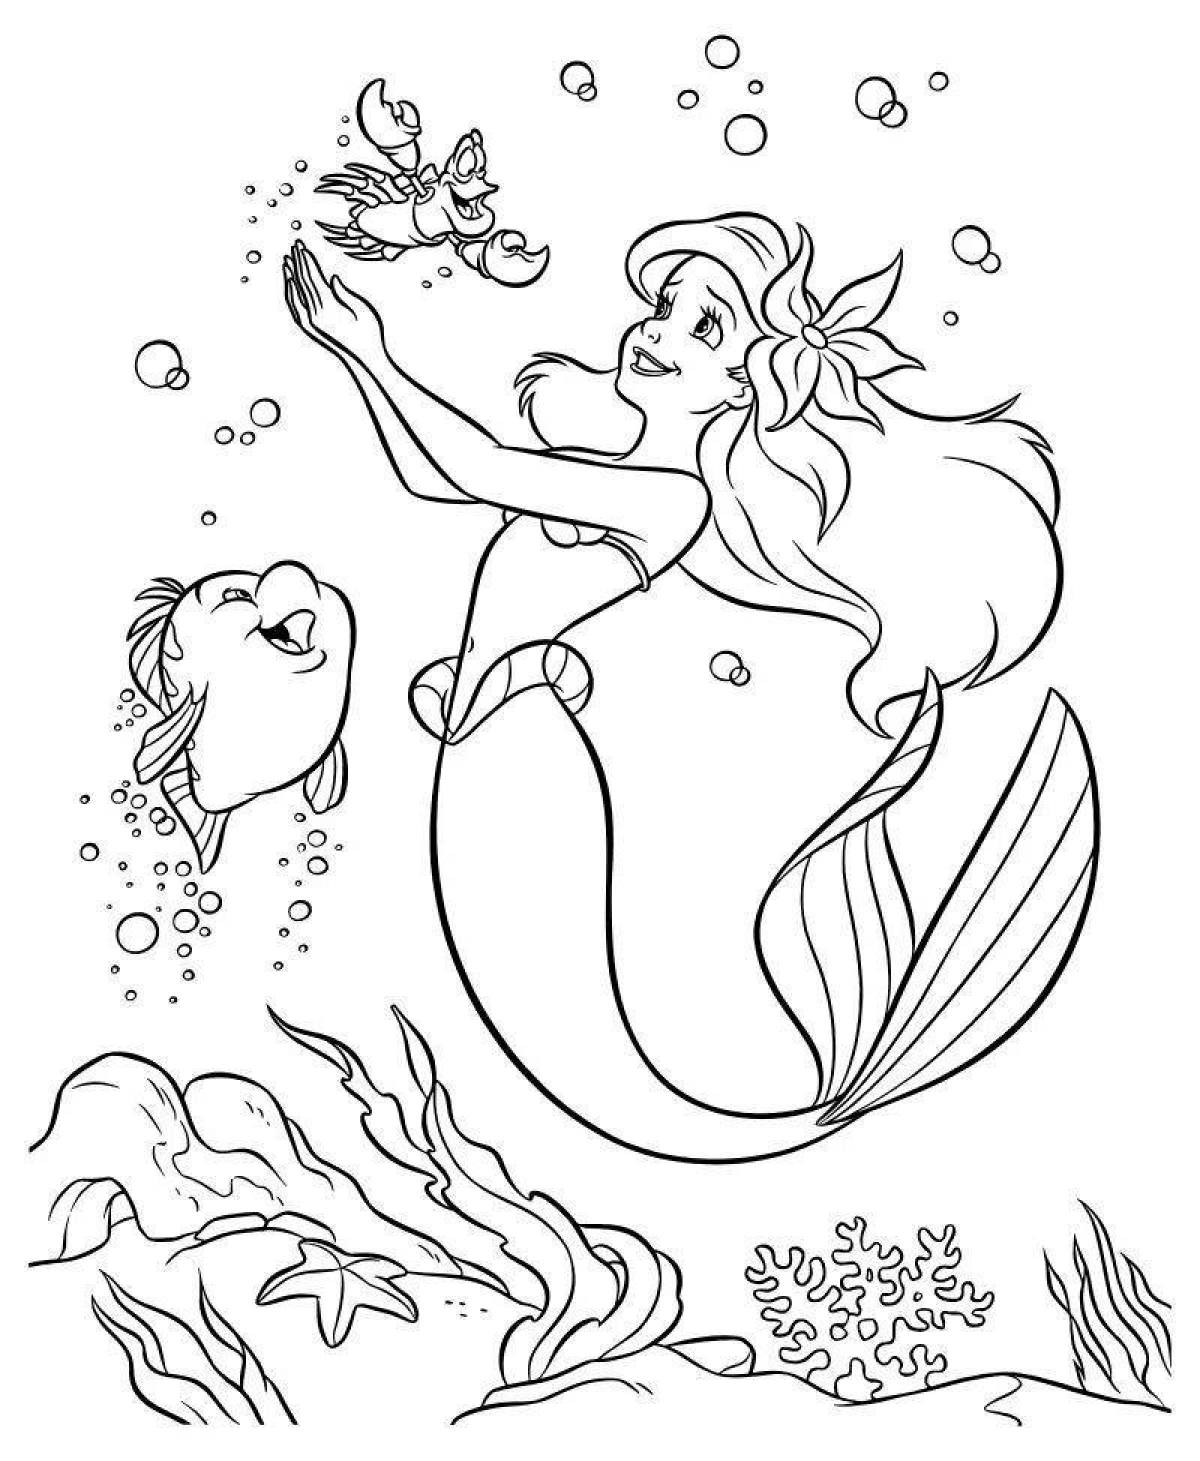 Tempting princess mermaid coloring book